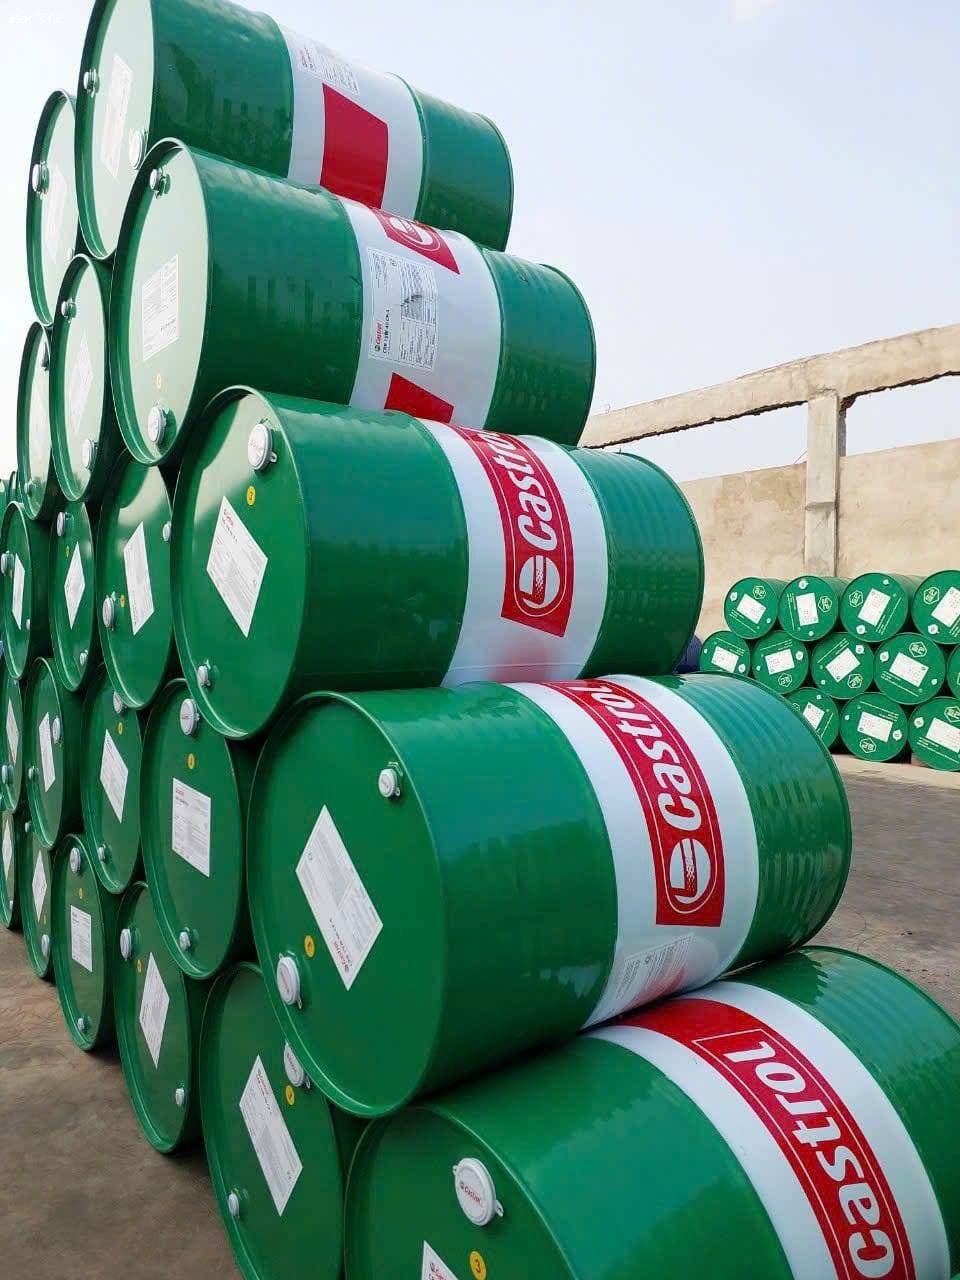 Đại lý, Nhà phân phối mua bán dầu nhớt Castrol BP chính hãng tại TPHCM, Bình Dương, Đồng Nai  – 0942.71.70.76